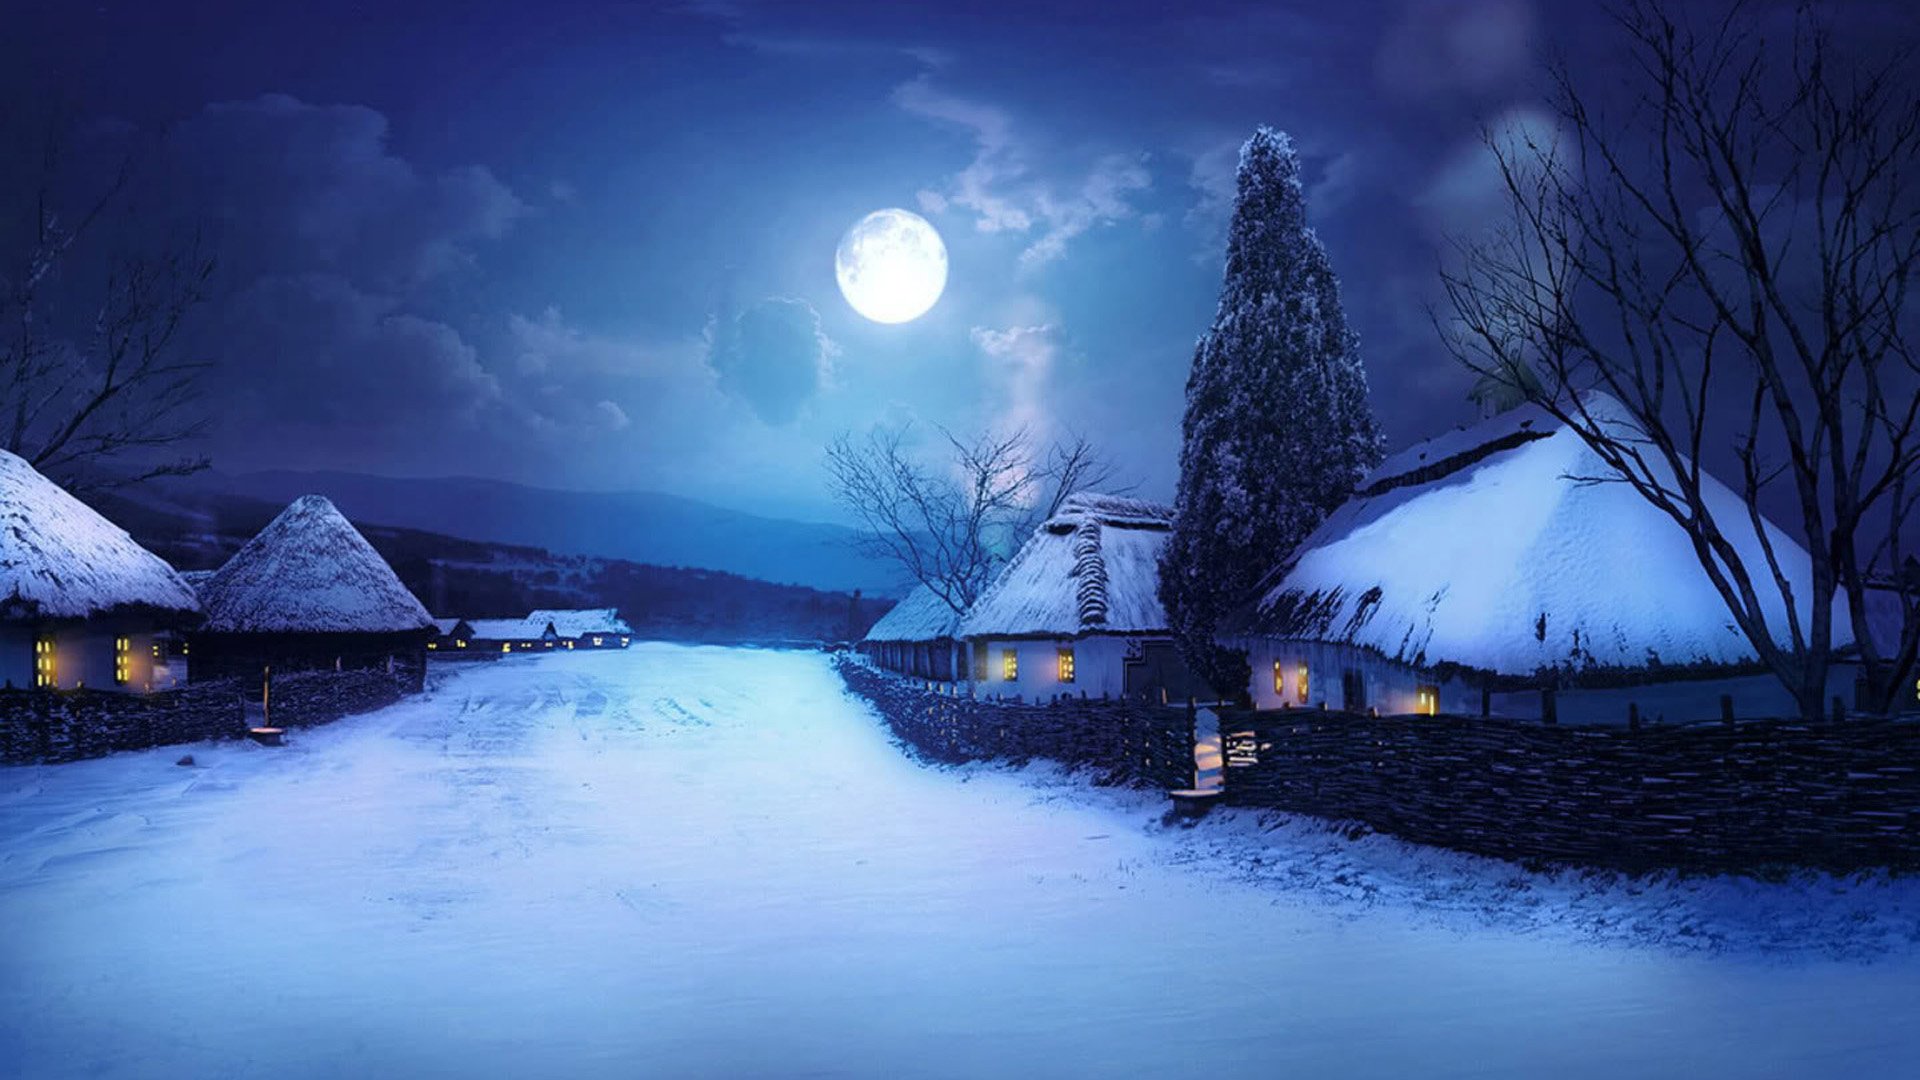 Full Moon Night In Winter Village